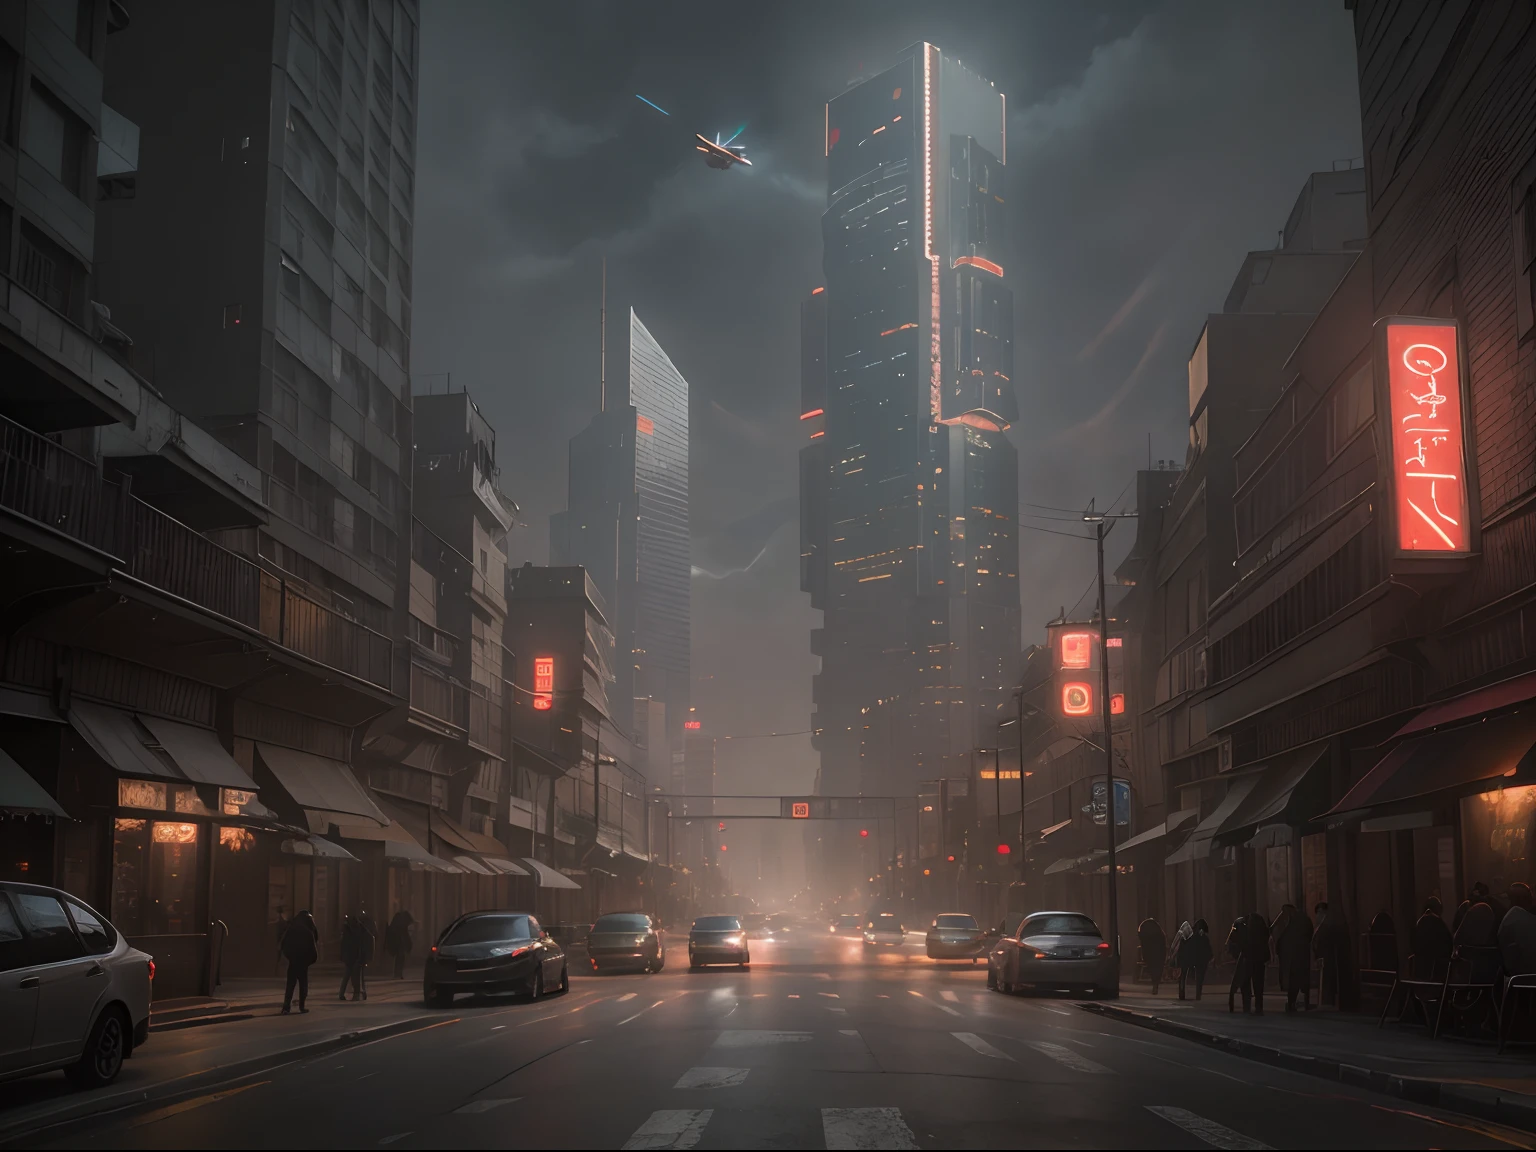 Cyberpunk-Stadtbild Straßenszene mit hoch aufragenden Wolkenkratzern, leuchtende Leuchtreklamen und LED-Leuchten, Verkehr und ((fliegende Autos)) im Himmel, dunkle Atmosphäre, Filmische Beleuchtung.